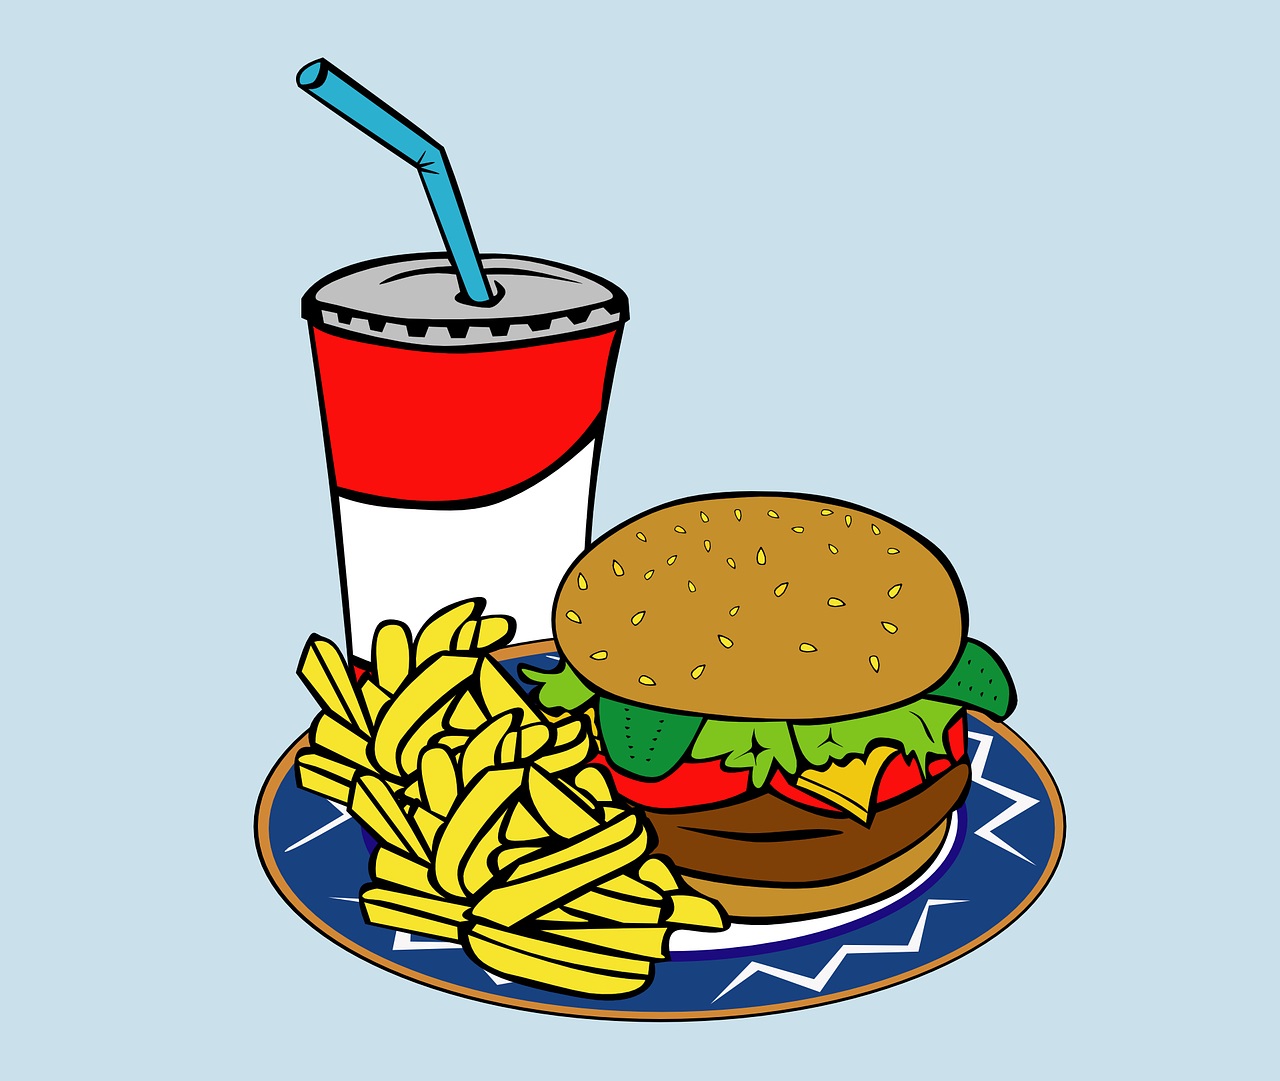 Fast food e gli effetti su salute e ambiente: come è cambiato il modo di mangiare - di Serena Valastro